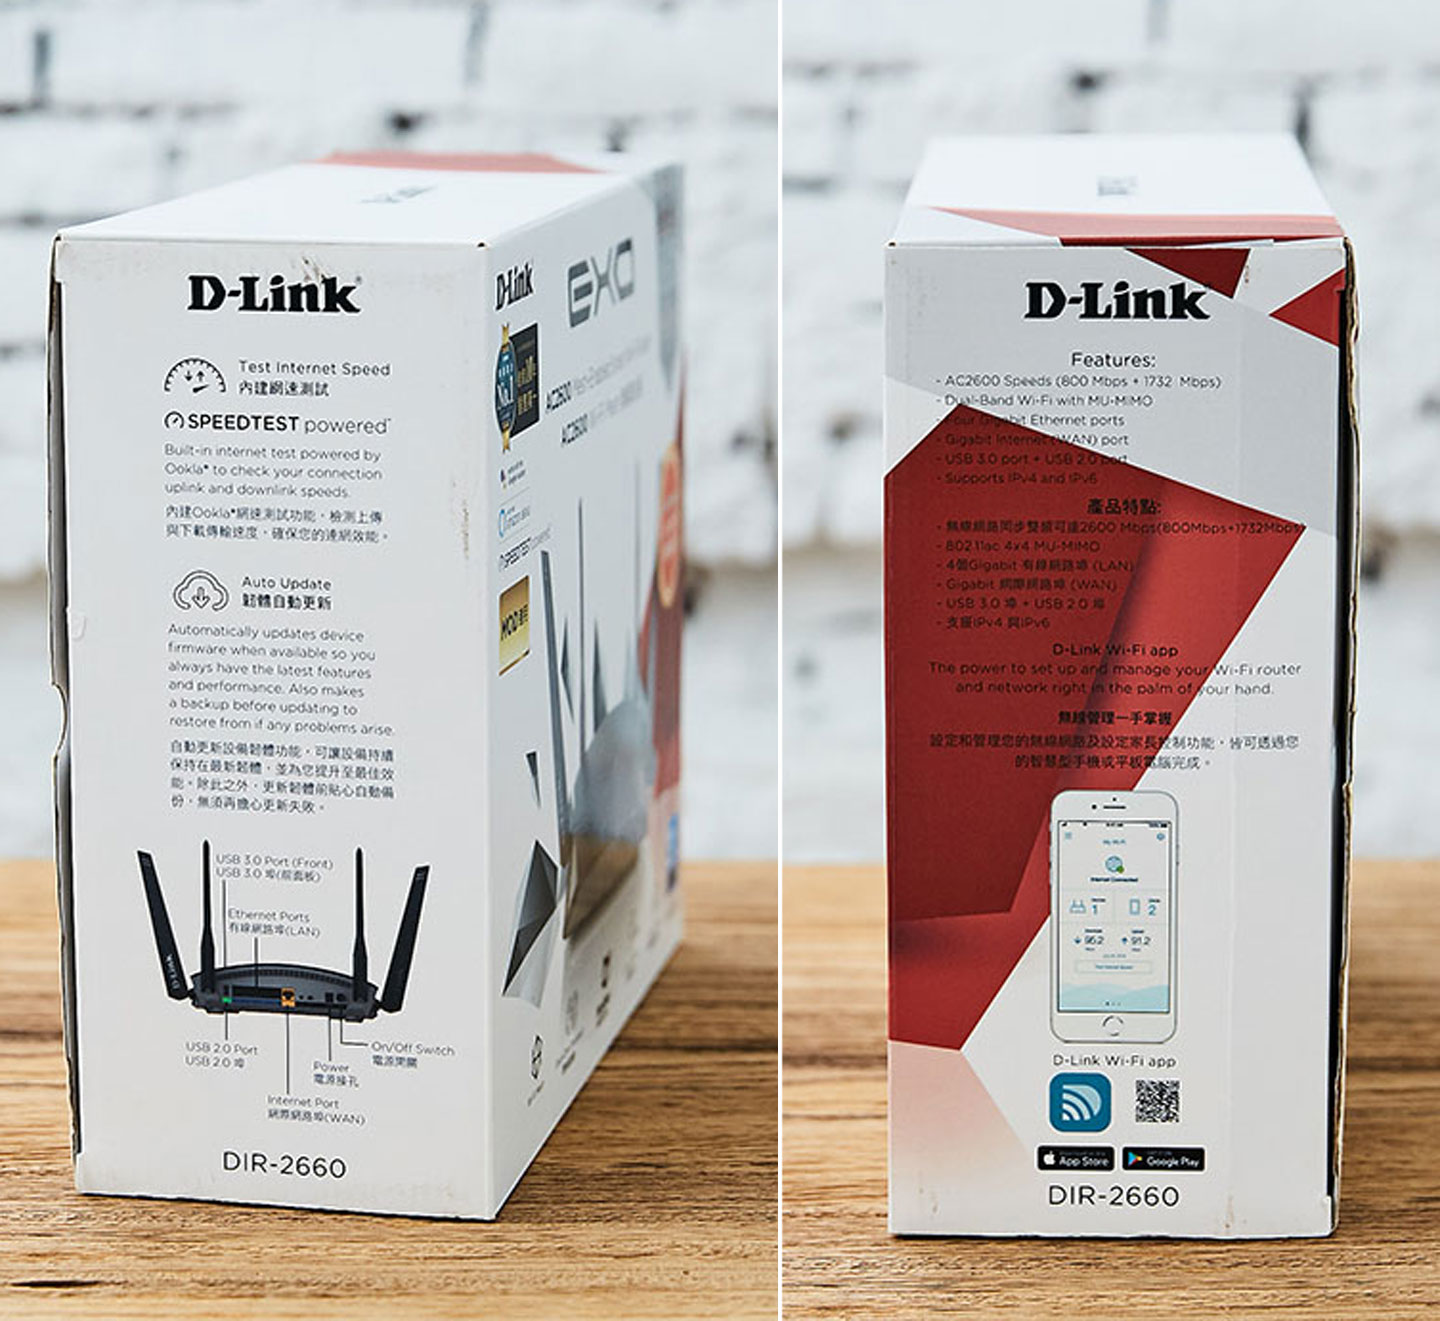 外盒兩側也列出詳細的功能說明，值得注意的是 DIR-2660 可透過手機 App「D-Link Wi-Fi」來進行設定與功能操控。